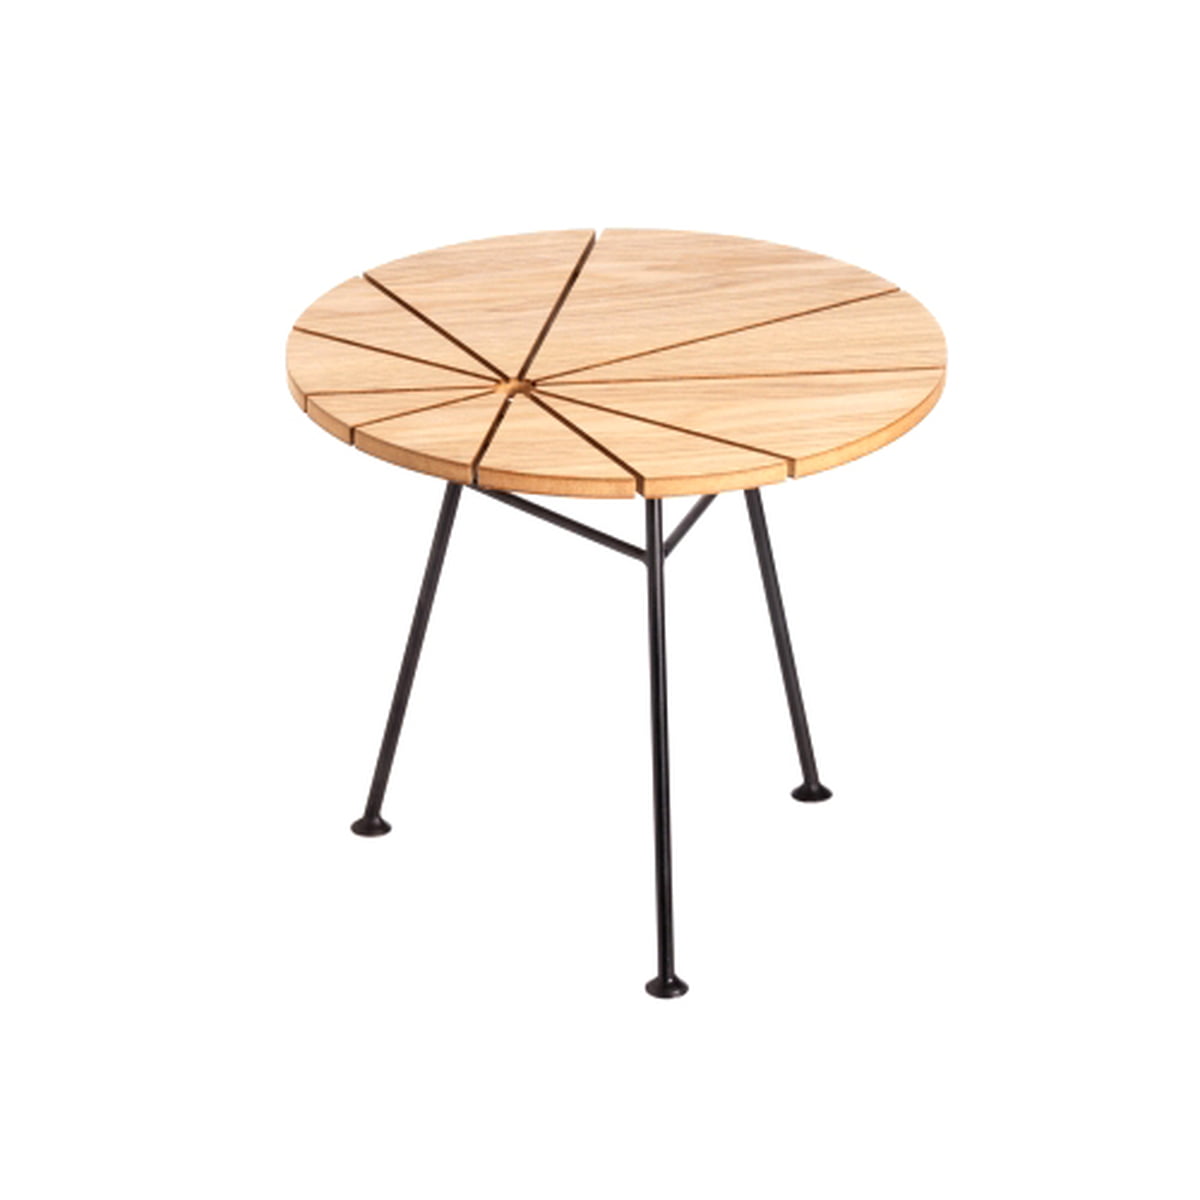 The OK Design Bam Bam Small n' Tall table